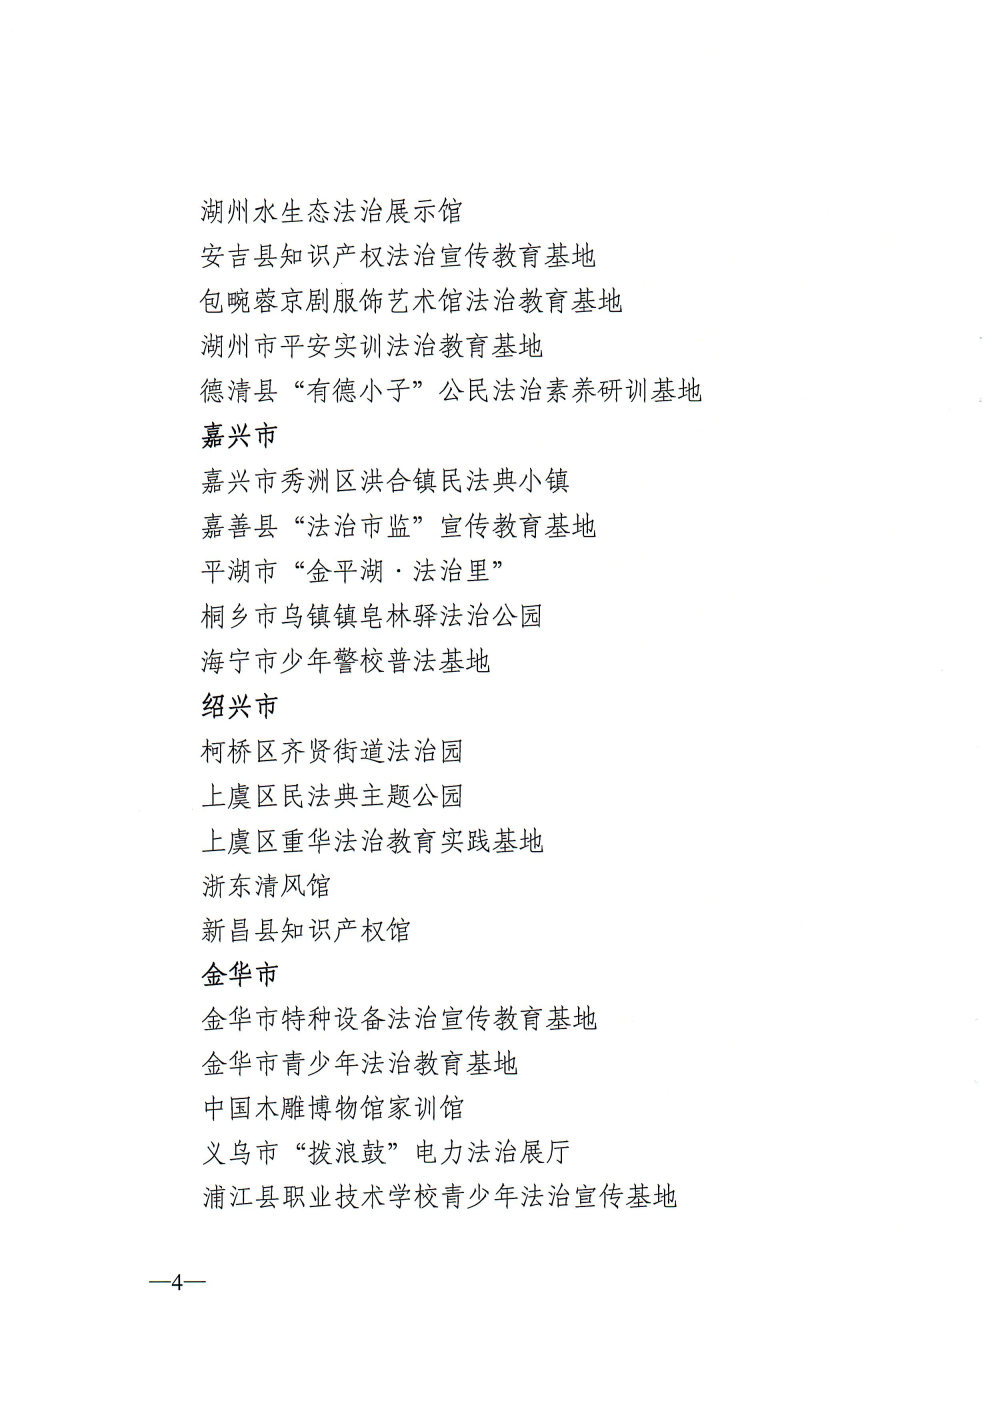 关于命名第二批浙江省法治宣传教育基地的通知_Page4_Image1.jpg